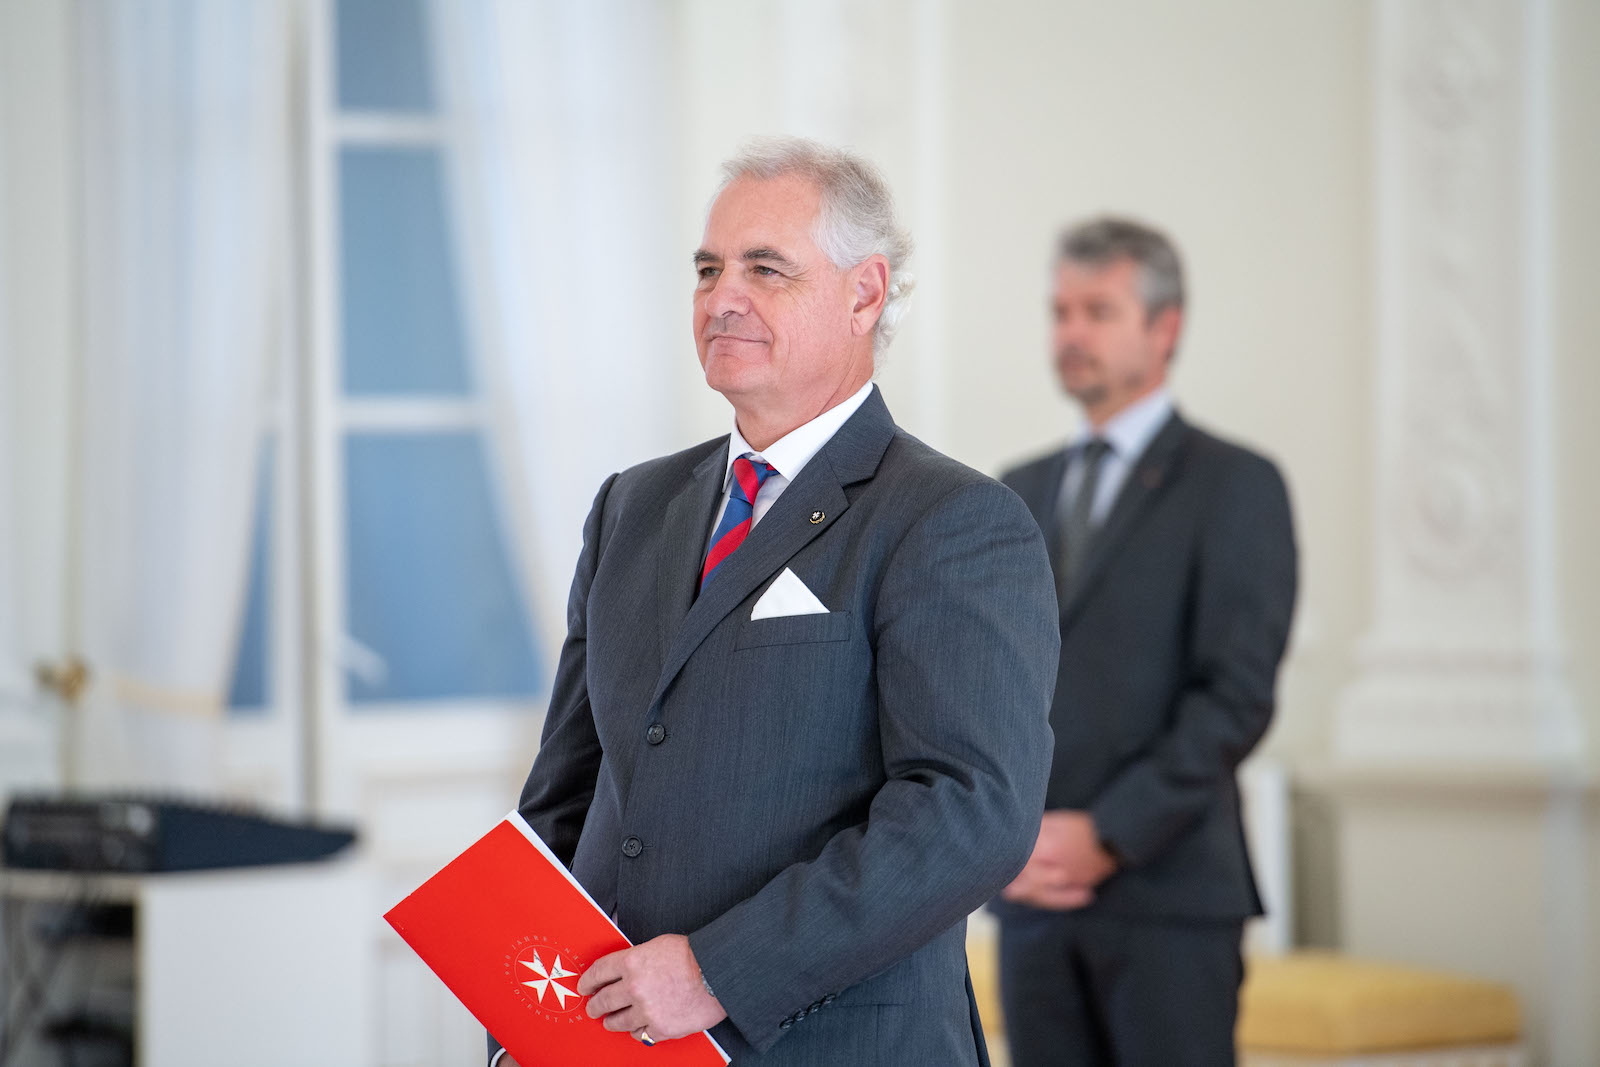 Le nouvel Ambassadeur de l’Ordre Souverain de Malte auprès de la Lituanie a présenté ses lettres de créance